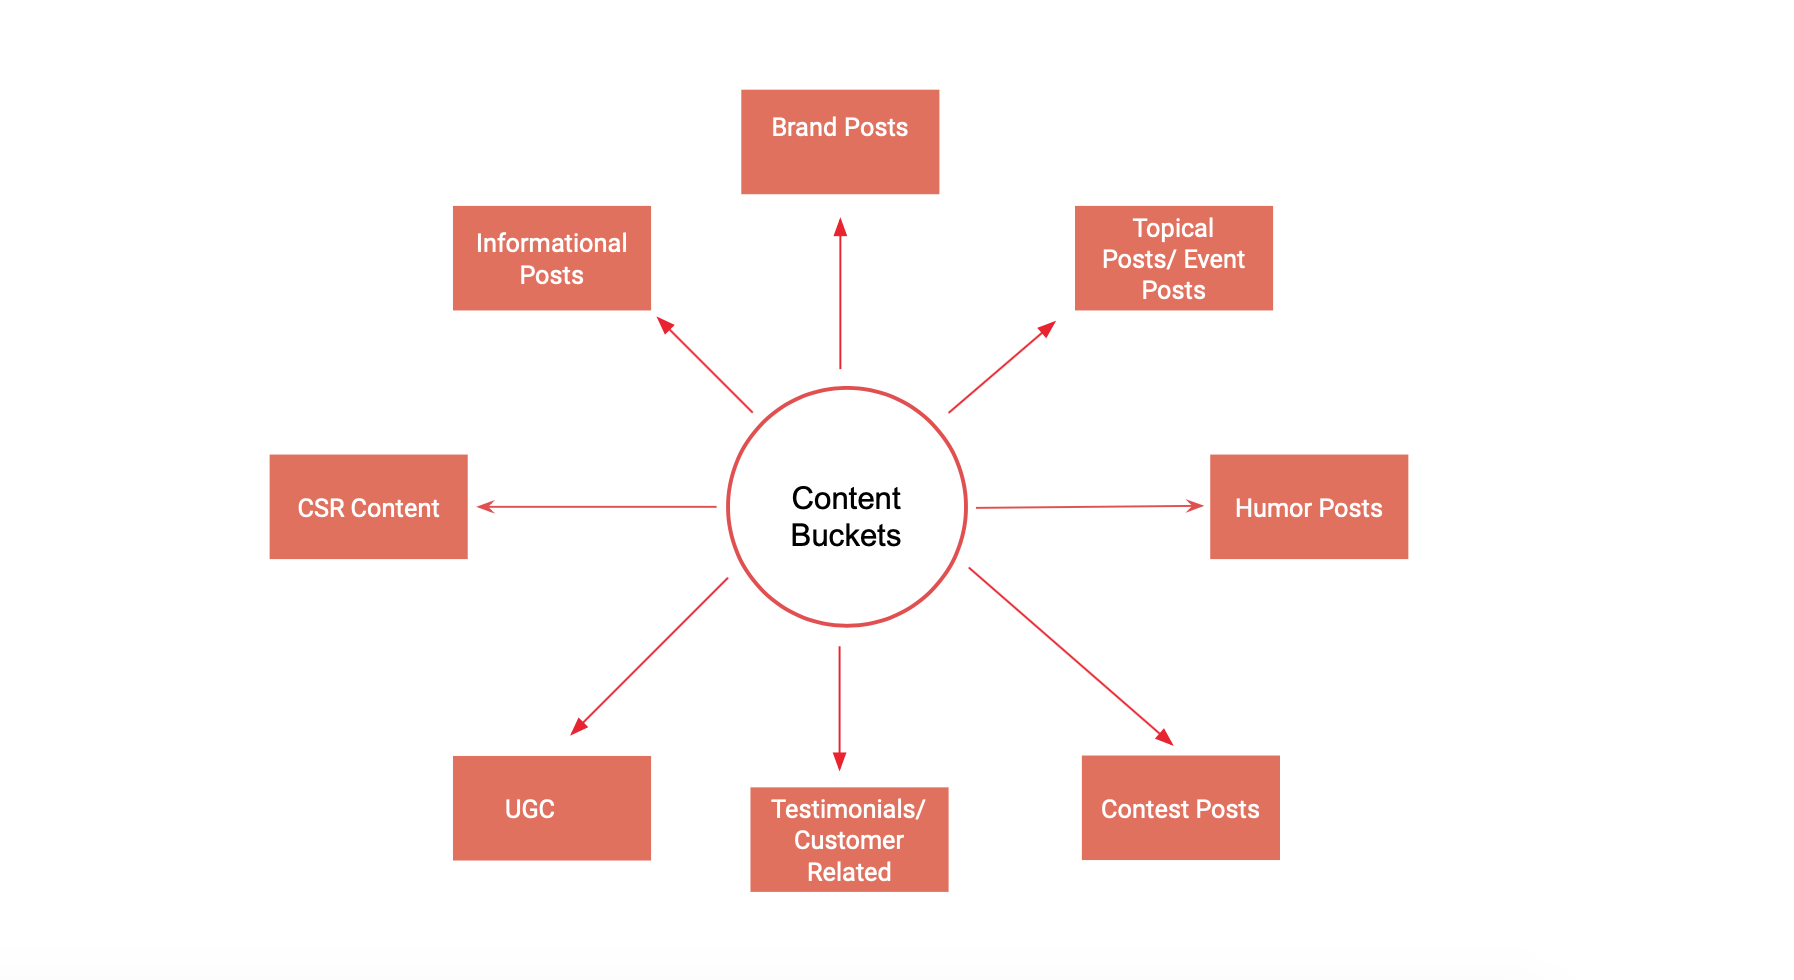 Content Buckets in Social Media Marketing